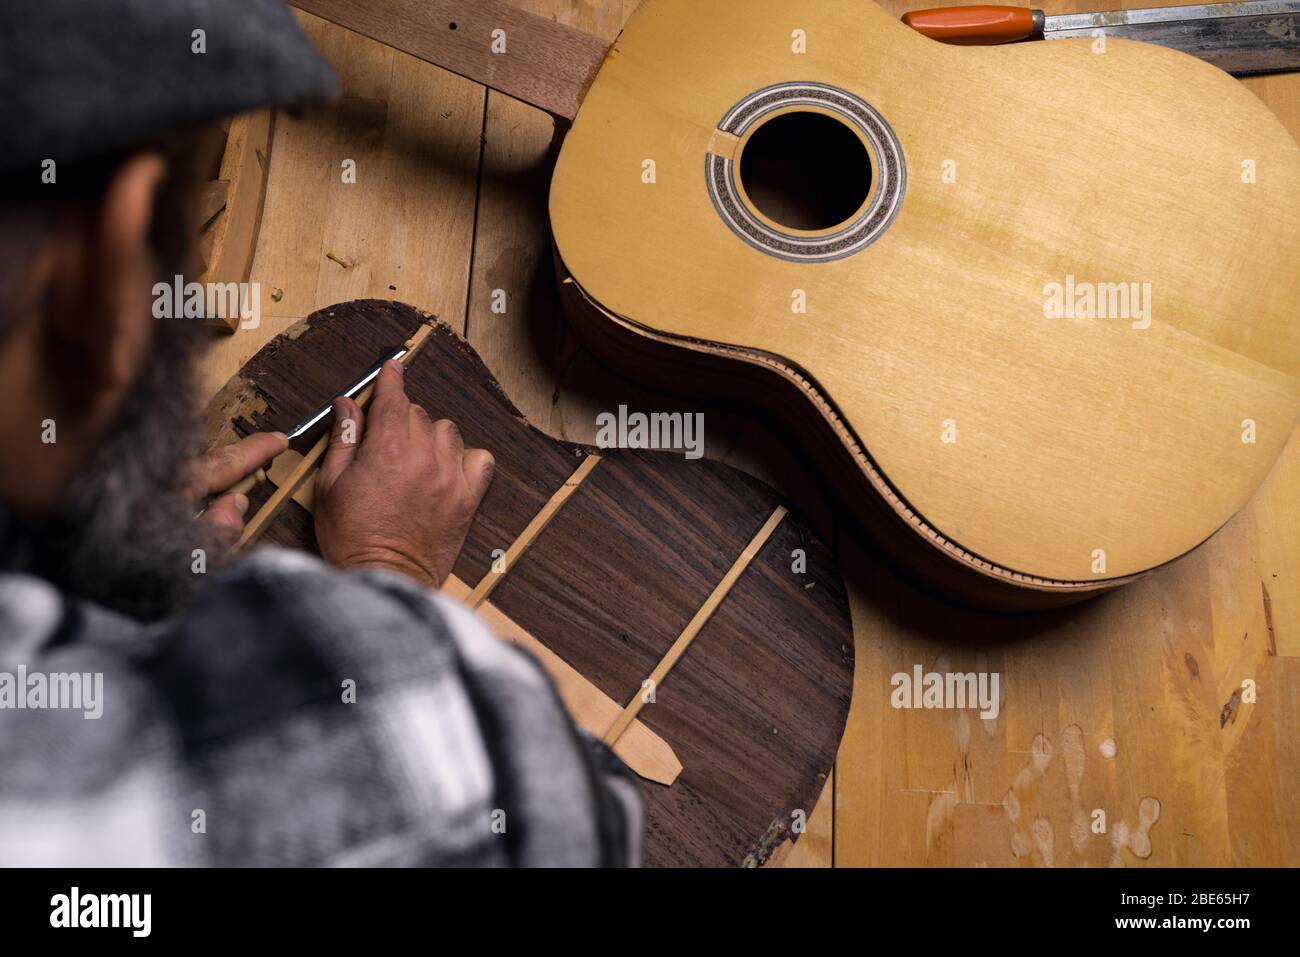 Vue aérienne de la table d'atelier de luthier. Artisan discutant du bois de derrière de la guitare classique en bois de rose avec gouge. Fond noir foncé. Banque D'Images